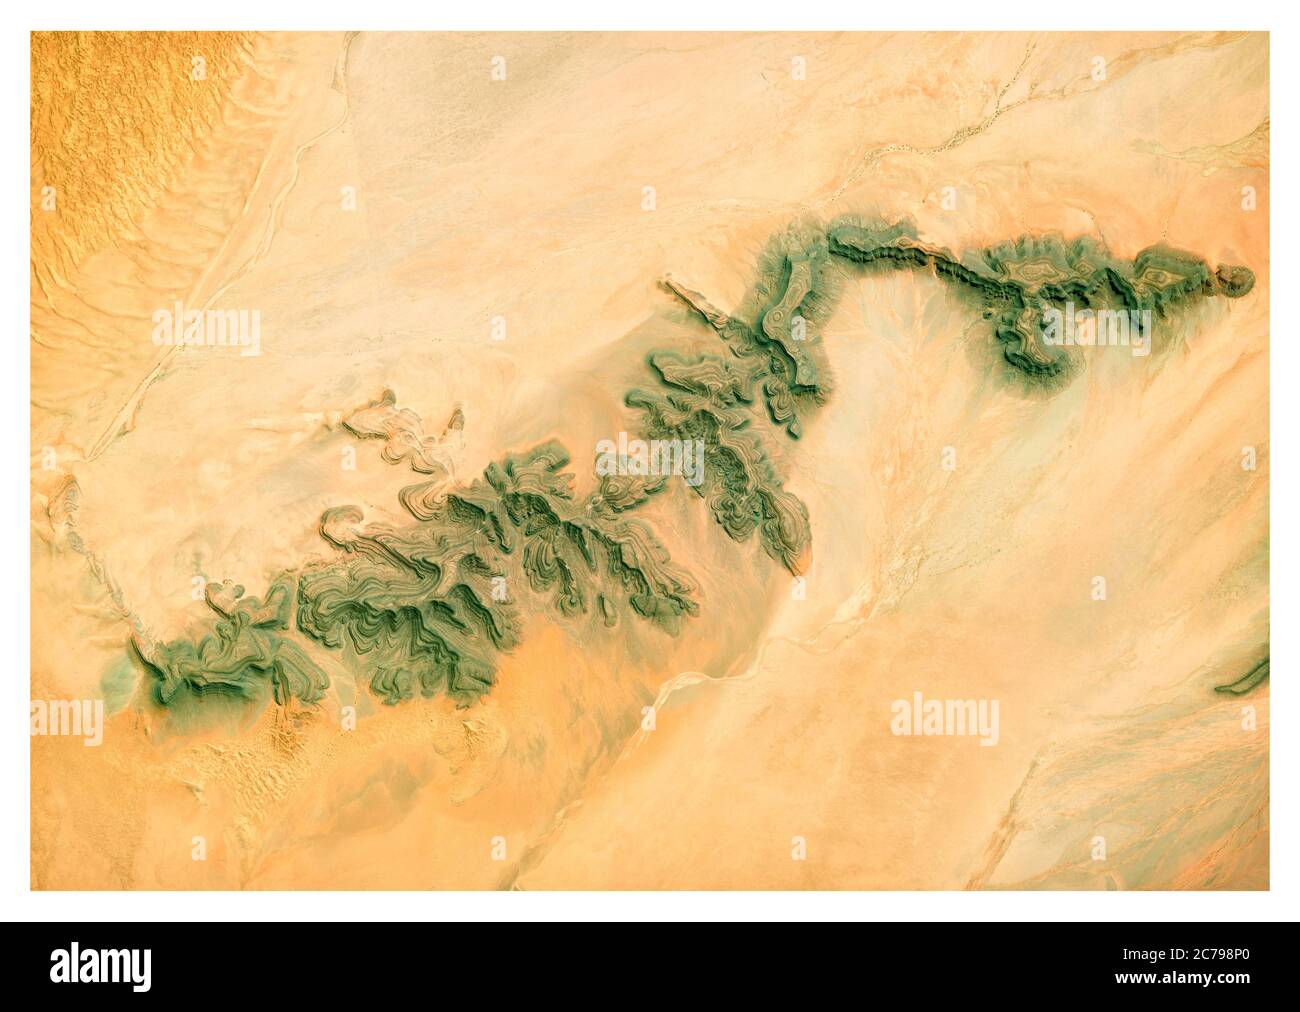 Vue satellite sur le désert, le paysage et les montagnes de Namibie. Vue sur la nature et l'antenne. Formes de fleurs. Réchauffement de la planète et changement climatique Banque D'Images